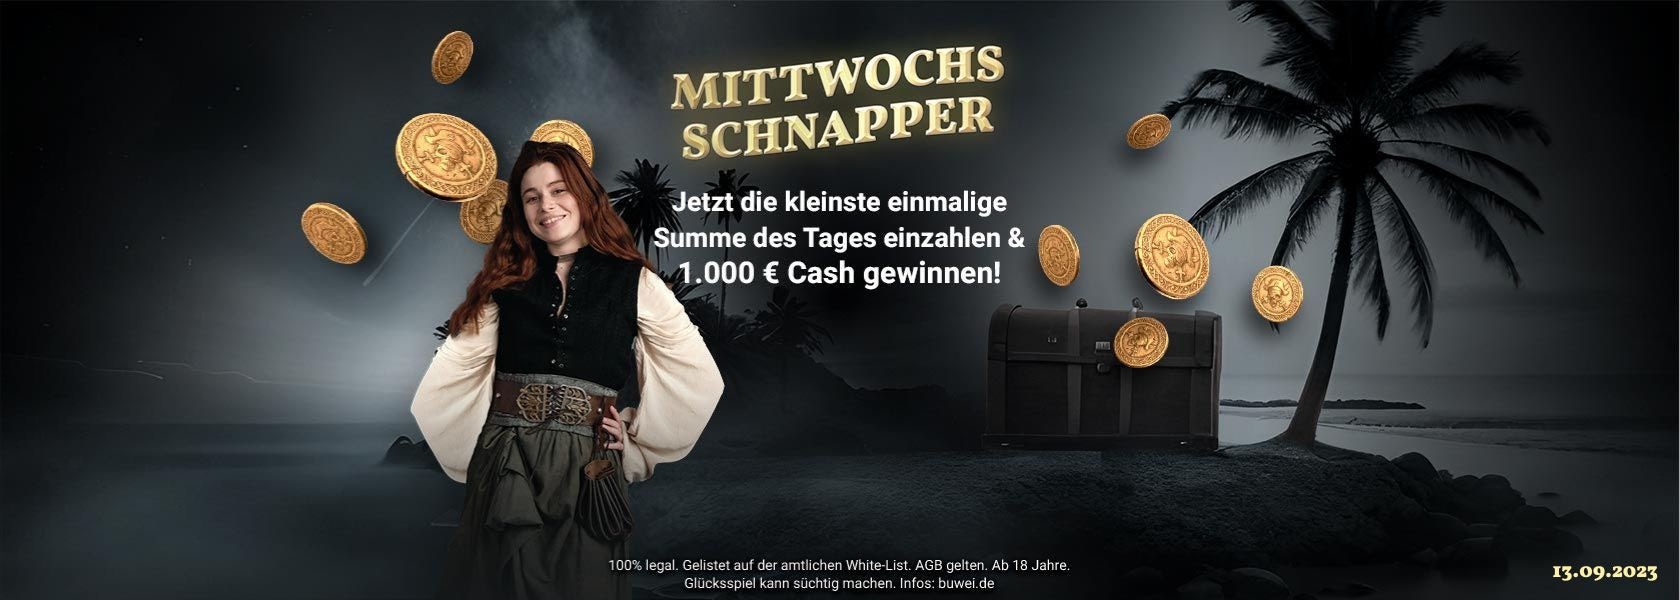 jackpotpiraten-titelbild-mittwochs-schnapper-130923